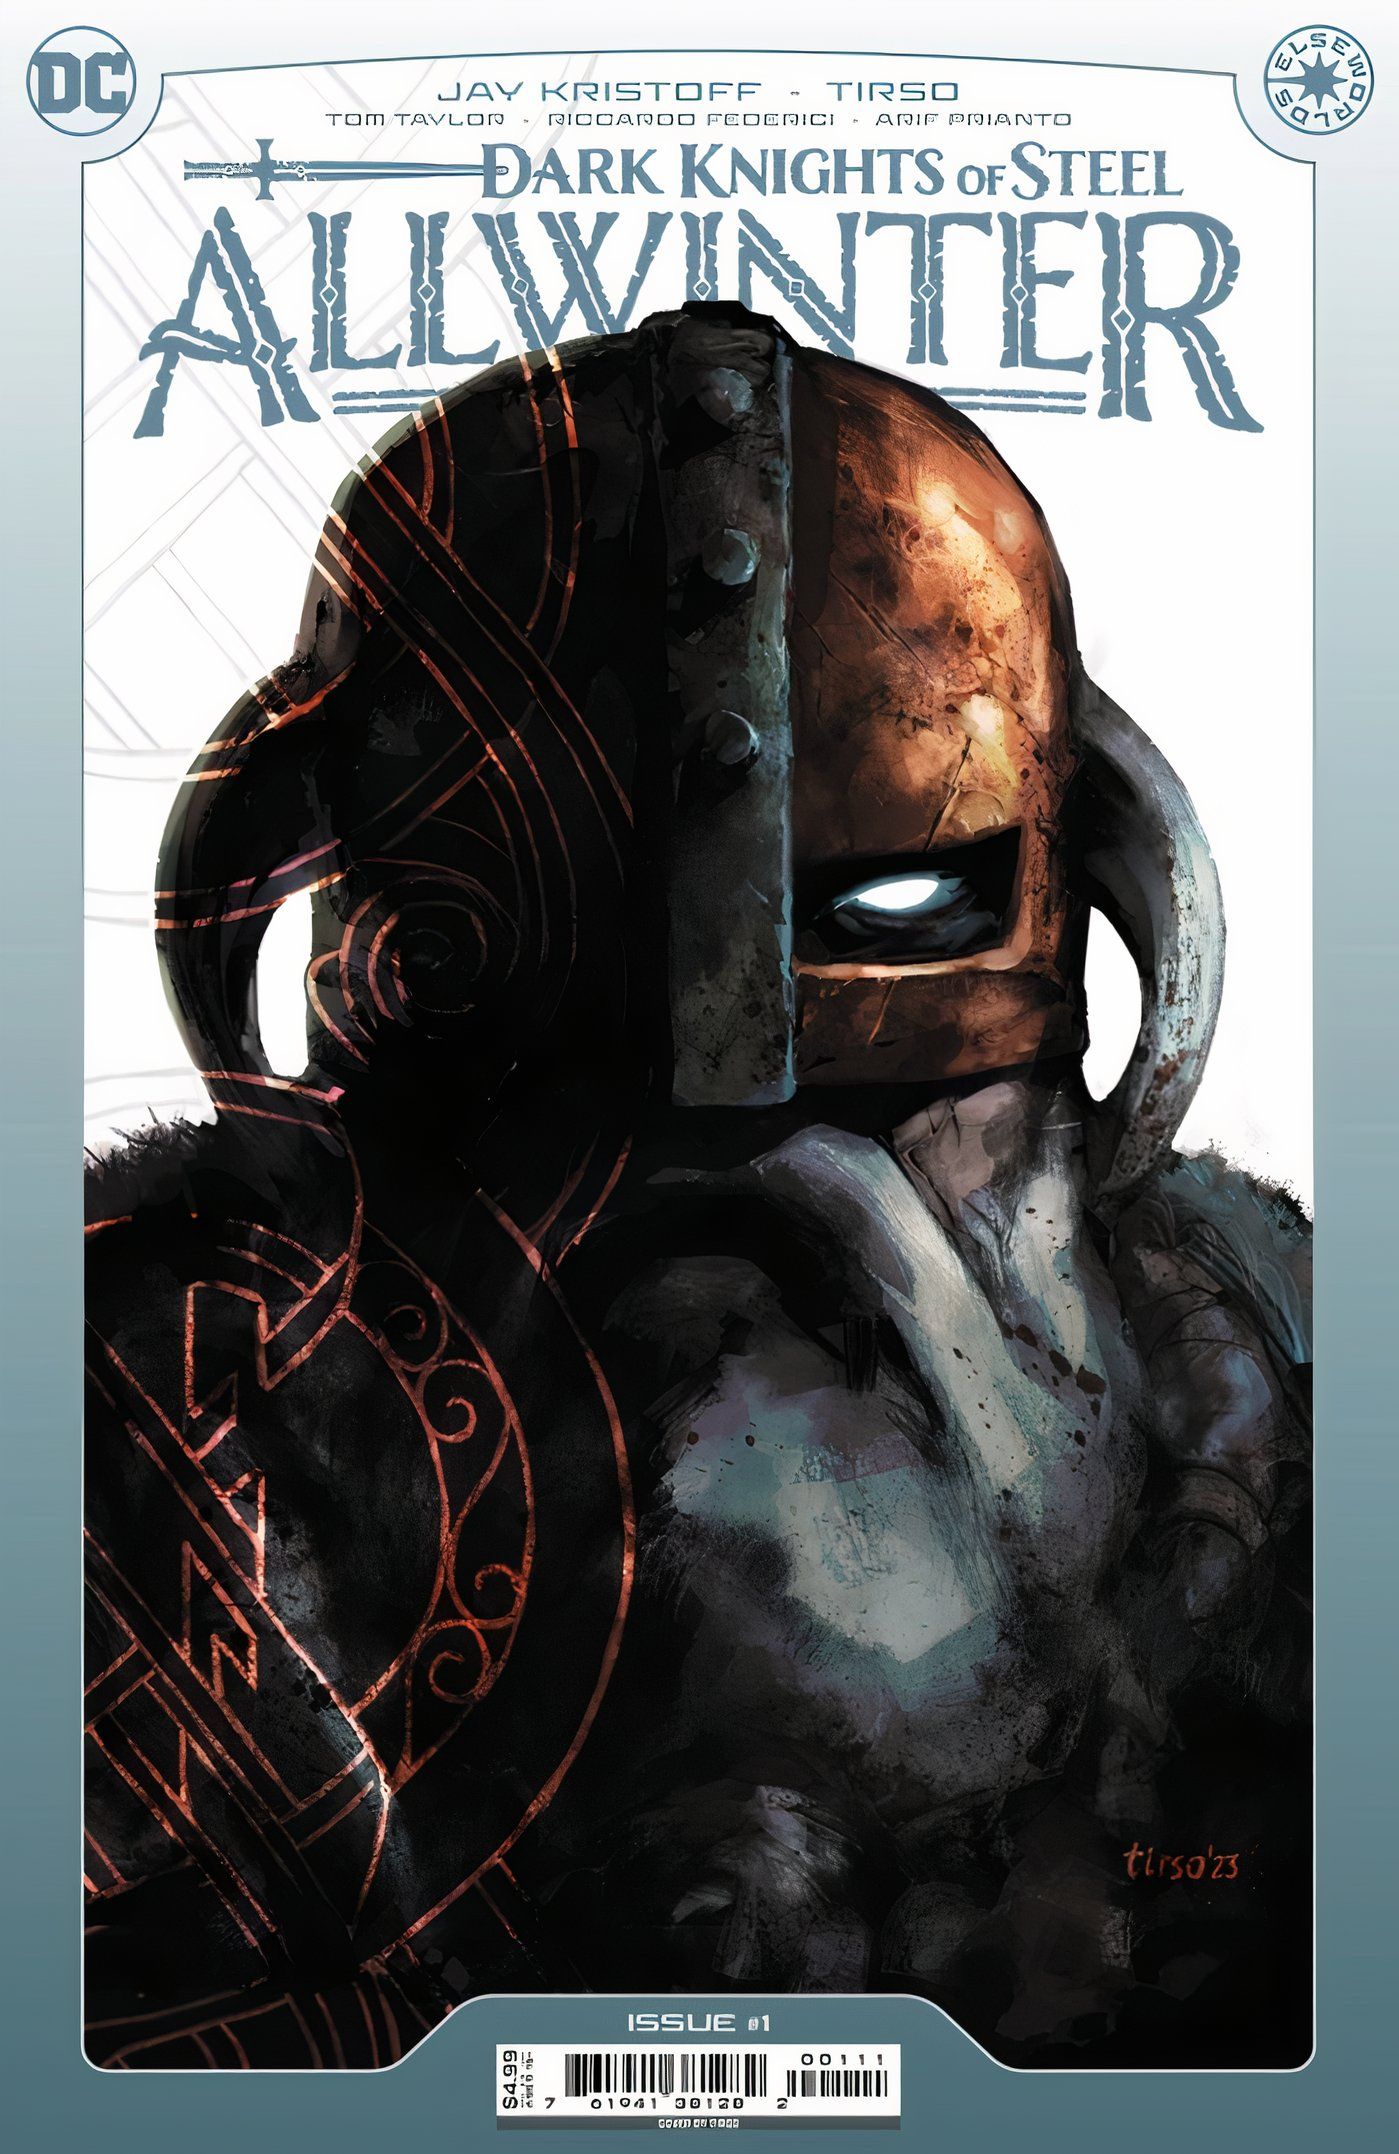 Capa principal de Dark Knights of Steel Allwinter #1 Deathstroke